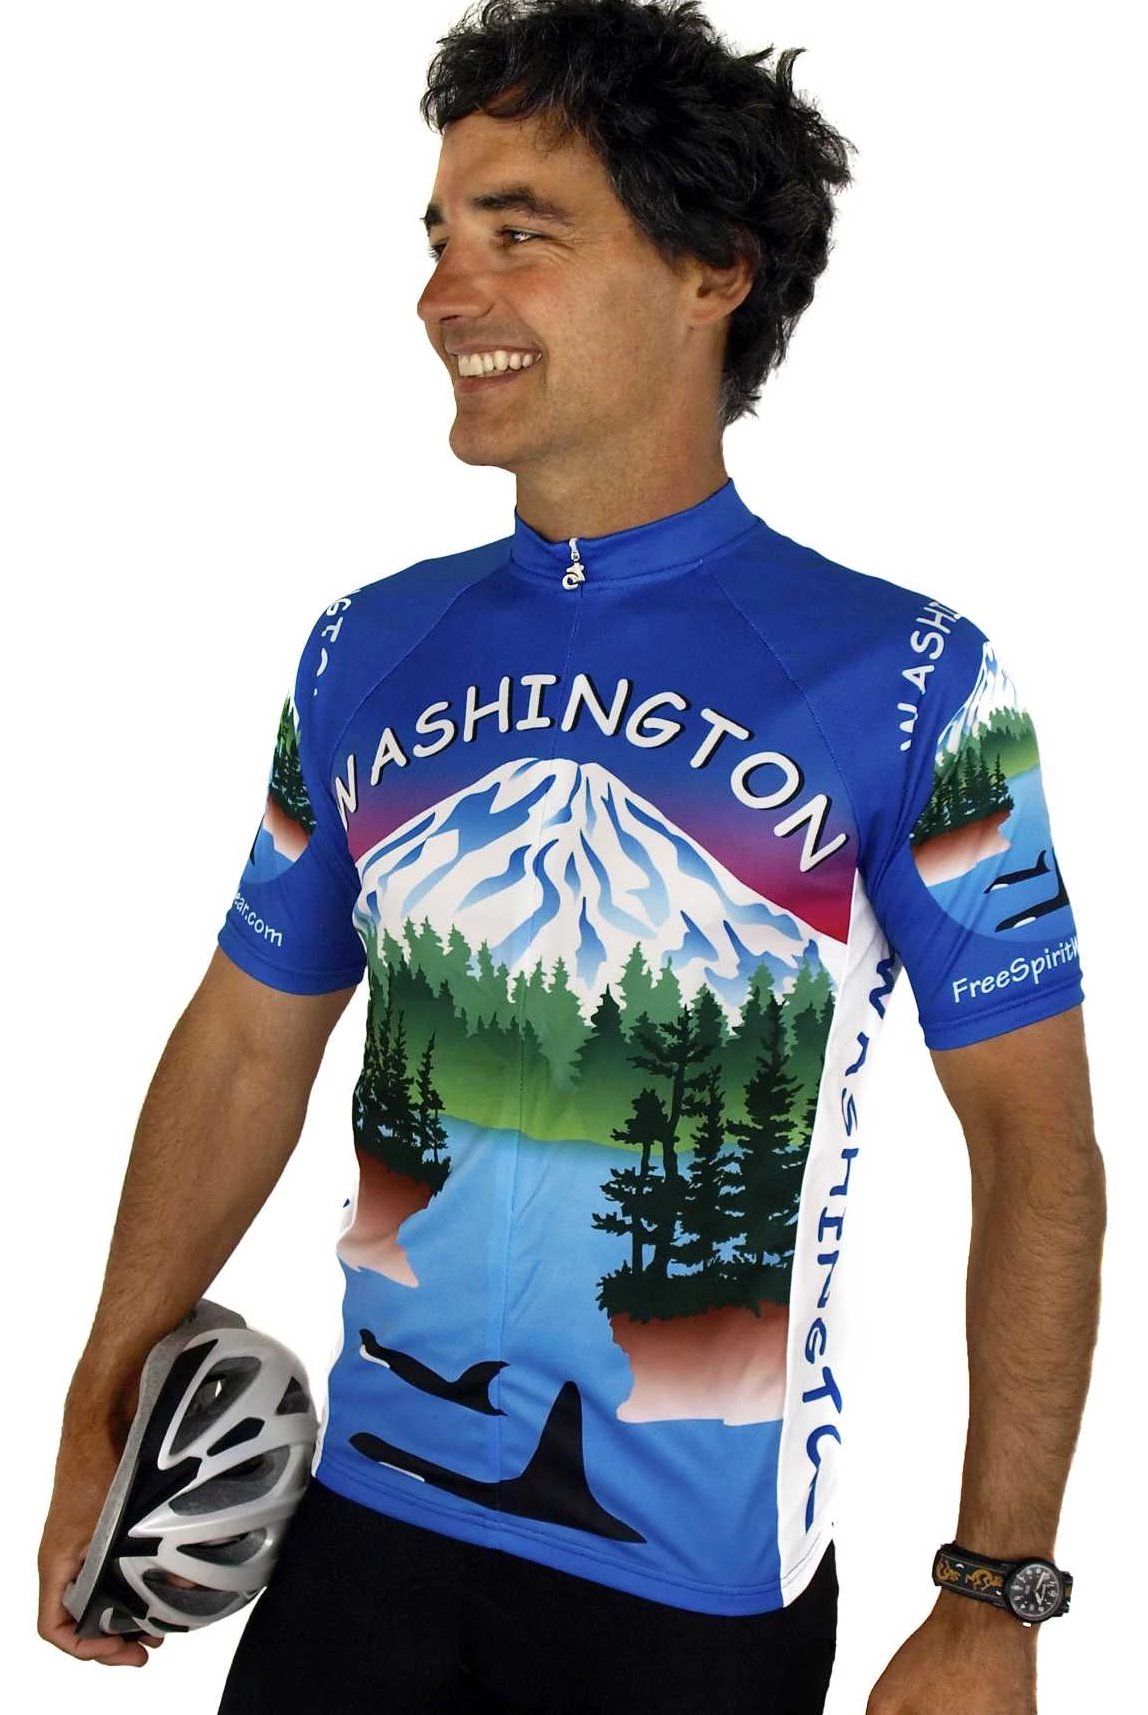 Washington Cycling Jersey M